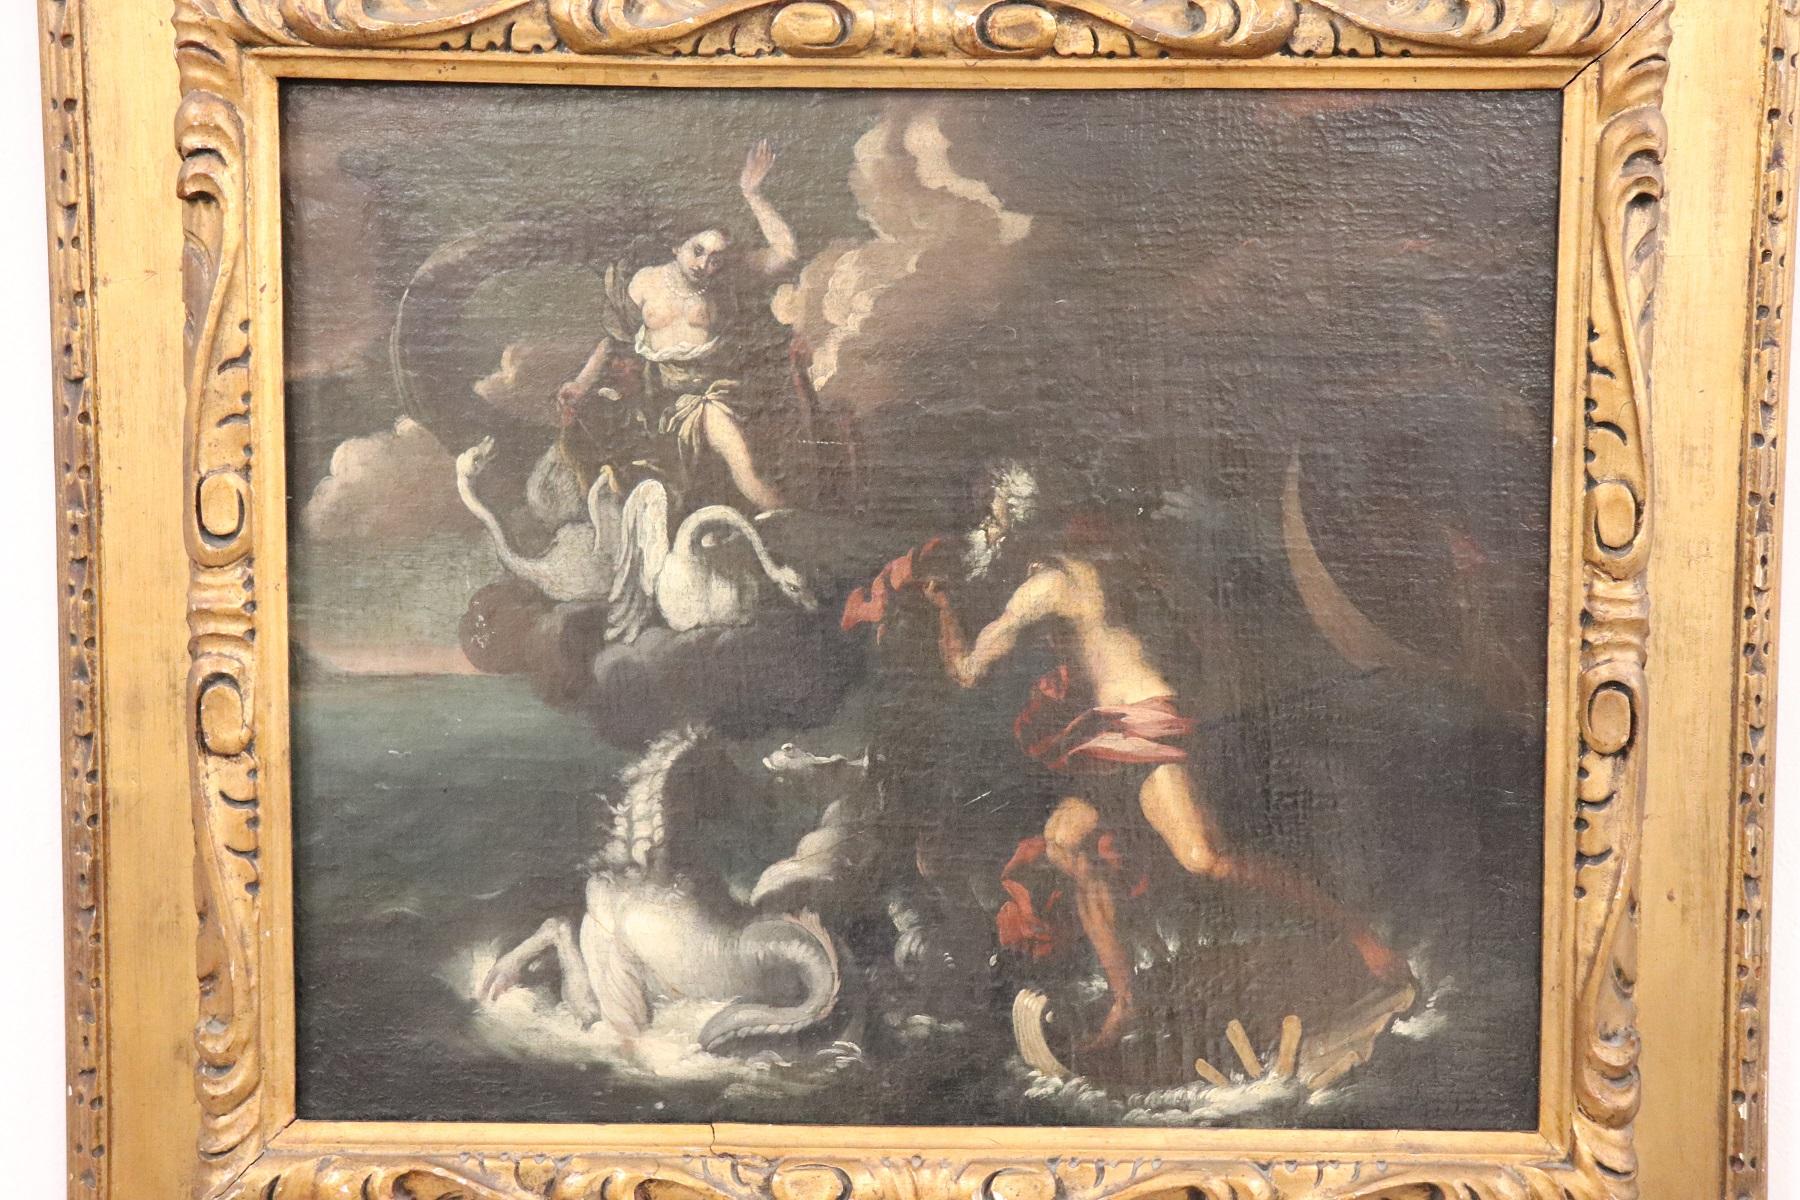 Importante peinture à l'huile ancienne sur toile de l'école bolonaise de la seconde moitié du XVIIe siècle. La scène est très complexe et animée. Le sujet est mythologique : Junon annonce l'arrivée des navires d'Enea à Neptune. Les histoires d'Énée